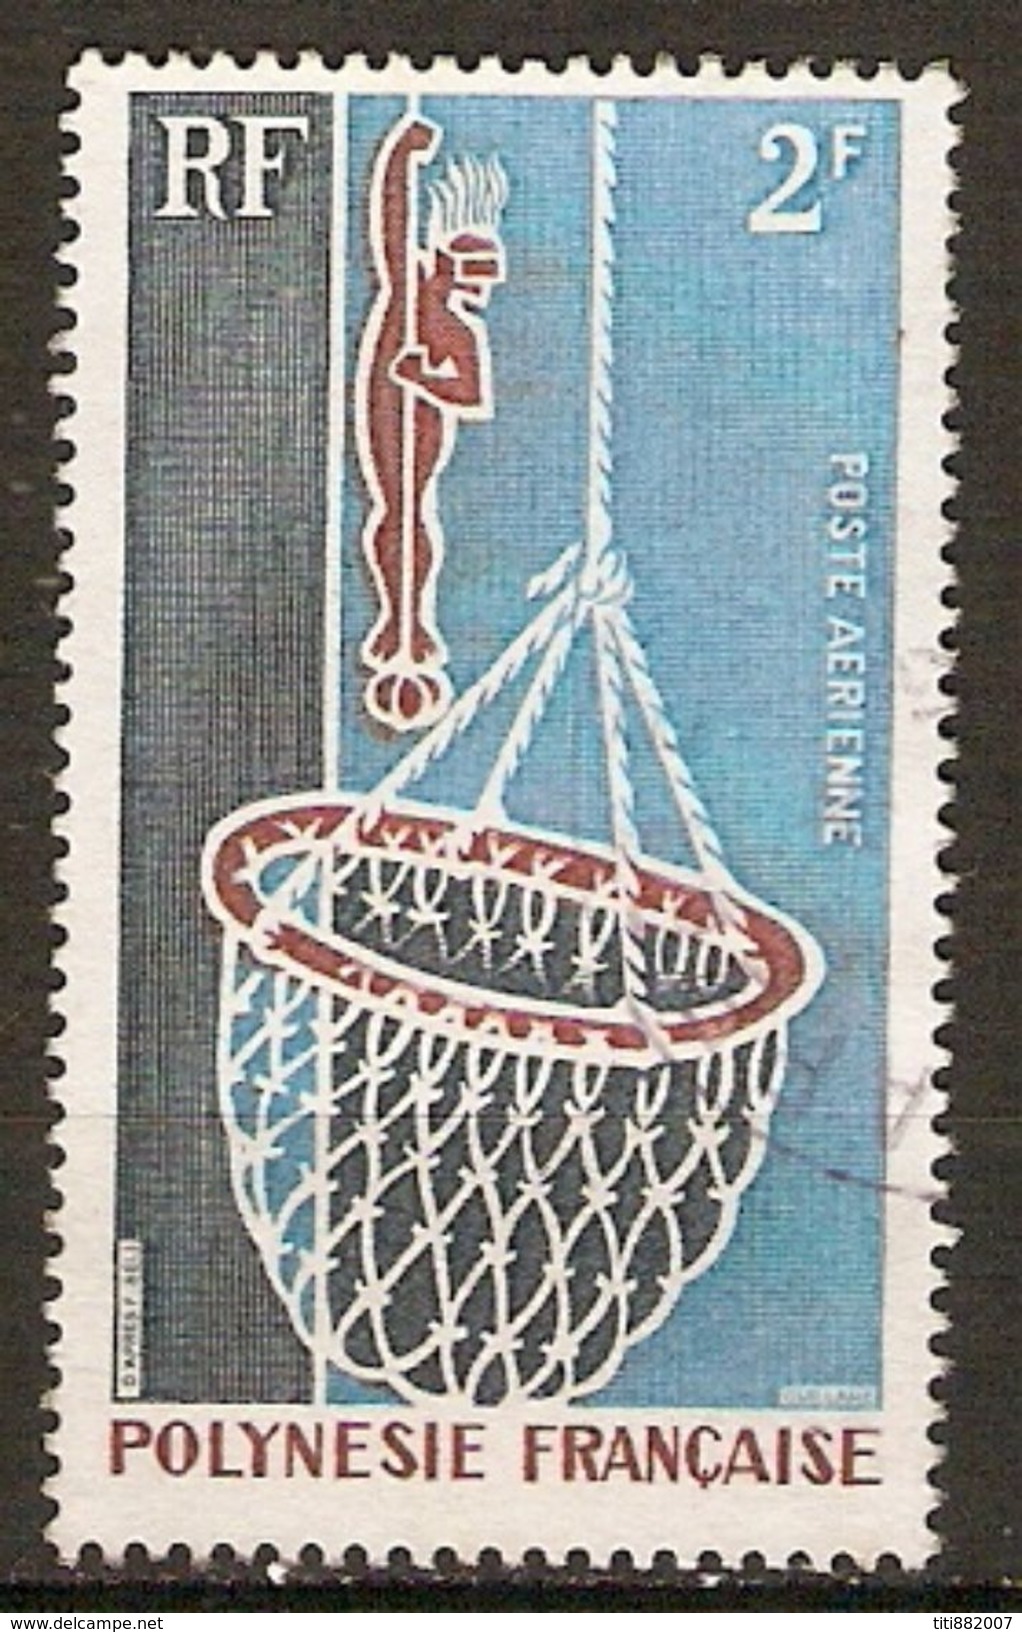 POLYNESIE  Française    -   Aéro  -    1970 .    Y&T N° 34 Oblitéré.   Huître Perlière  /  Plongeur Avec Panier - Used Stamps